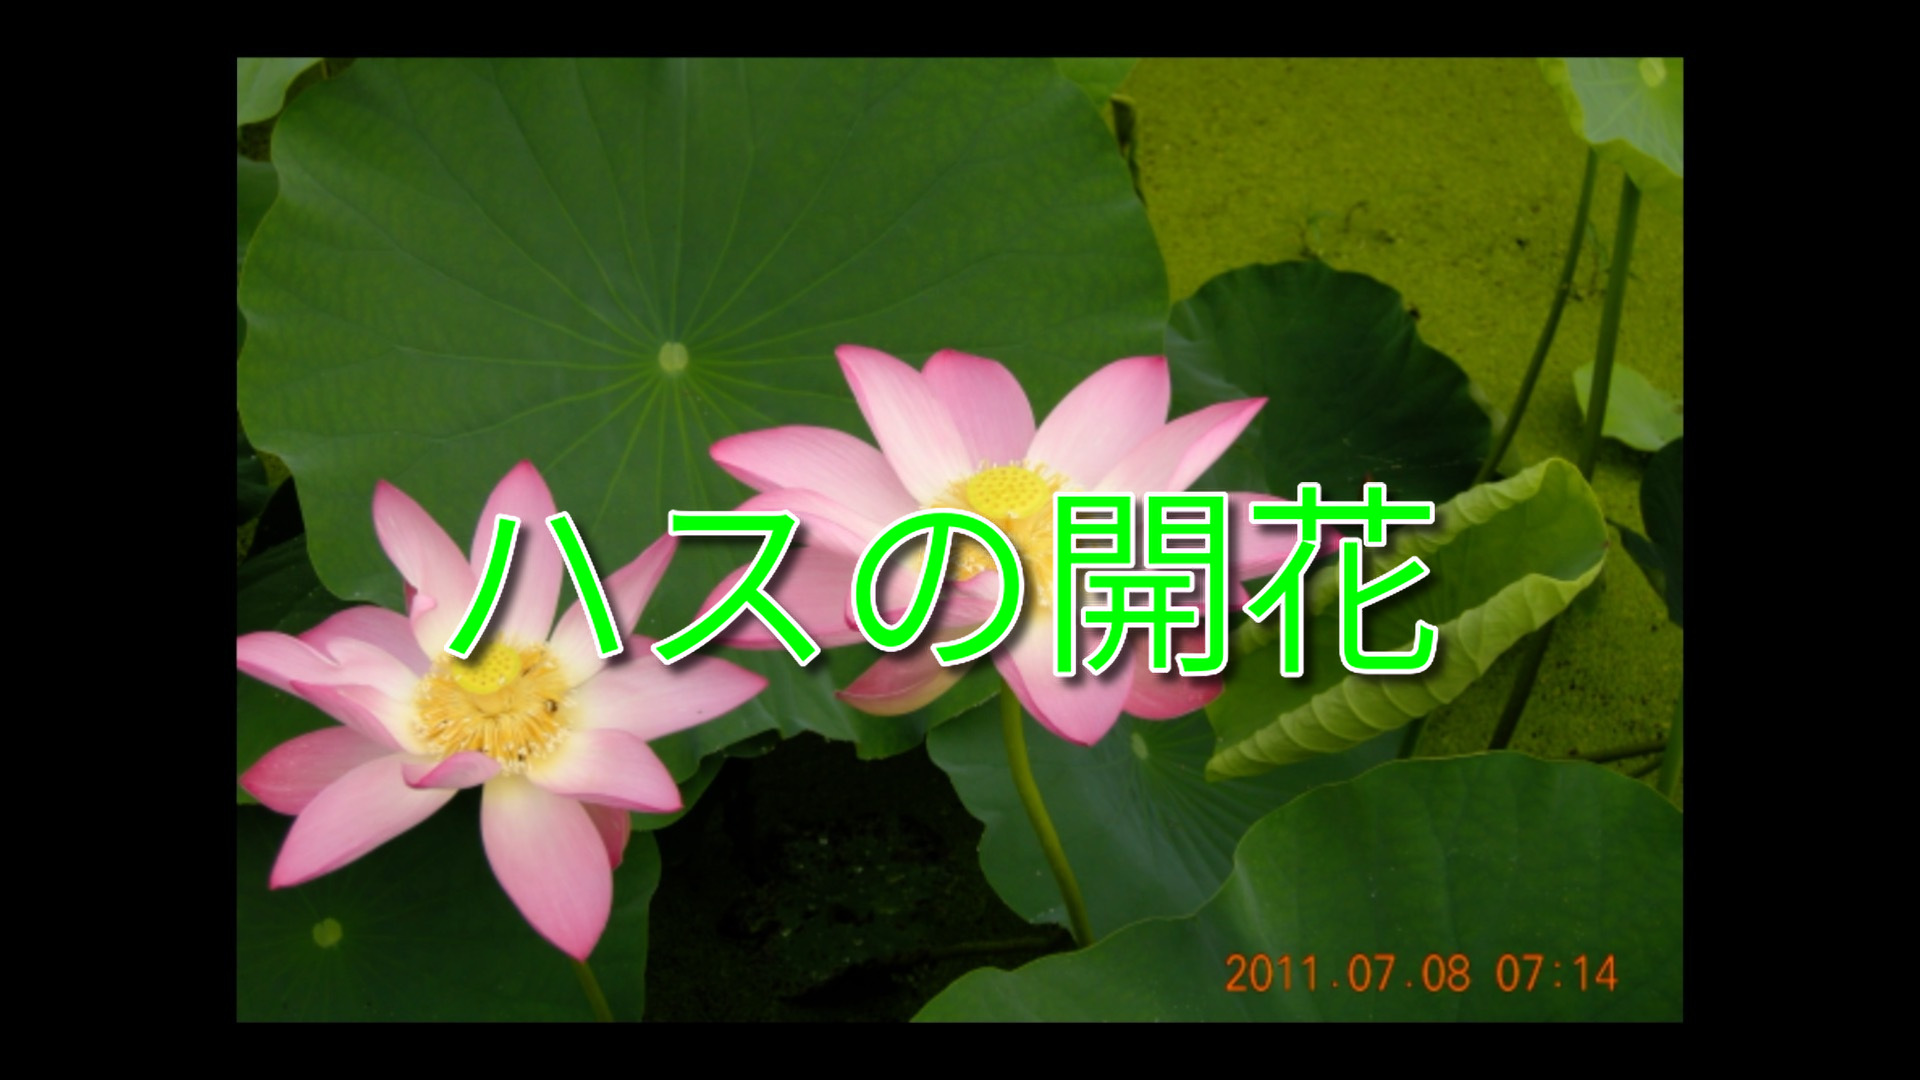 「ハスの開花」の動画写真です。岡山市北区高松の宗治ハスの開花をインターバル撮影の写真を動画にしています。早朝午前５時頃から７時３０分にかけて開花しました。